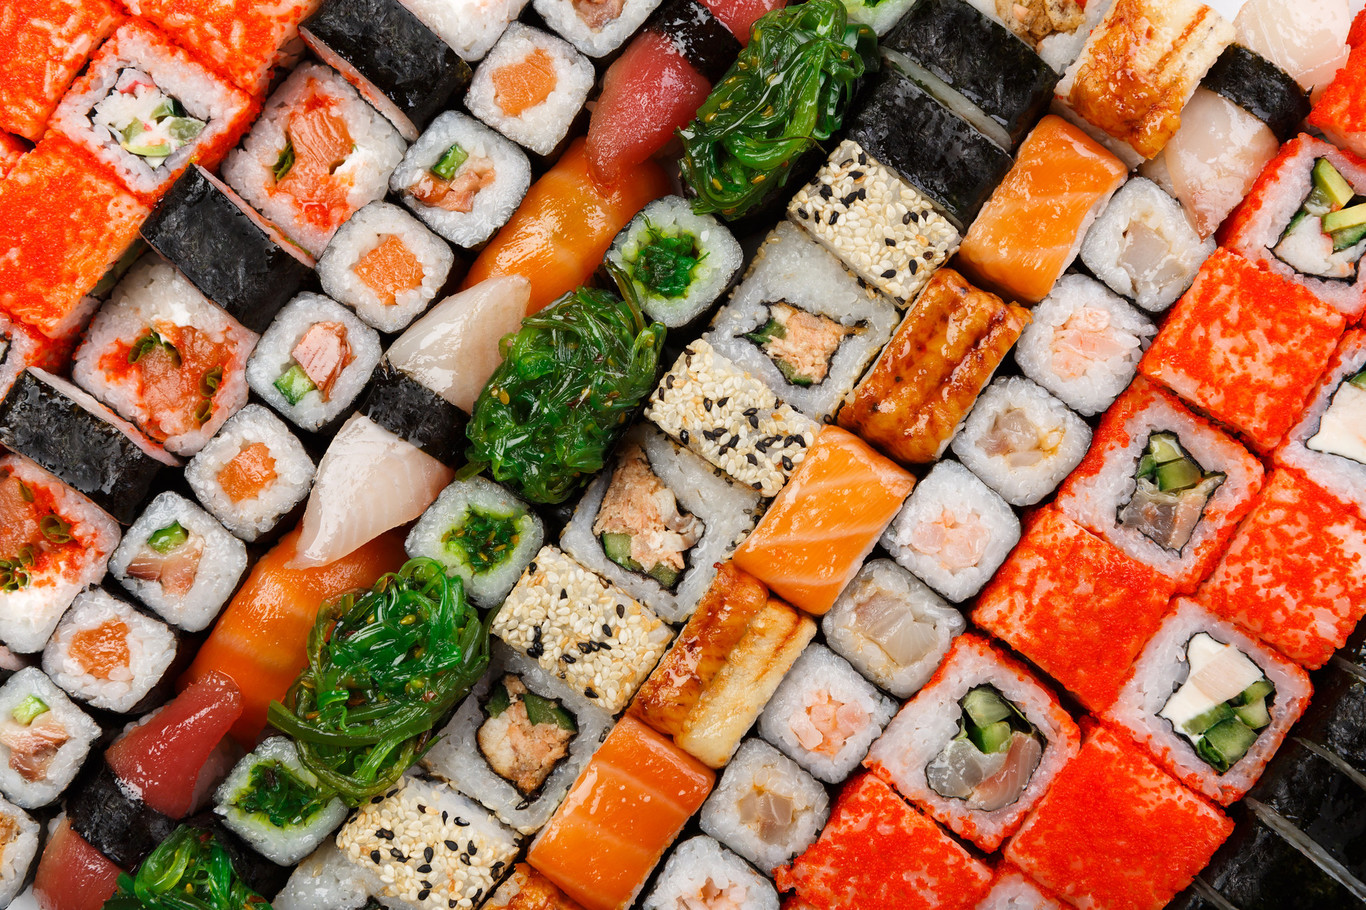 Esplorando l’eleganza del Sushi: un viaggio nella cucina giapponese.